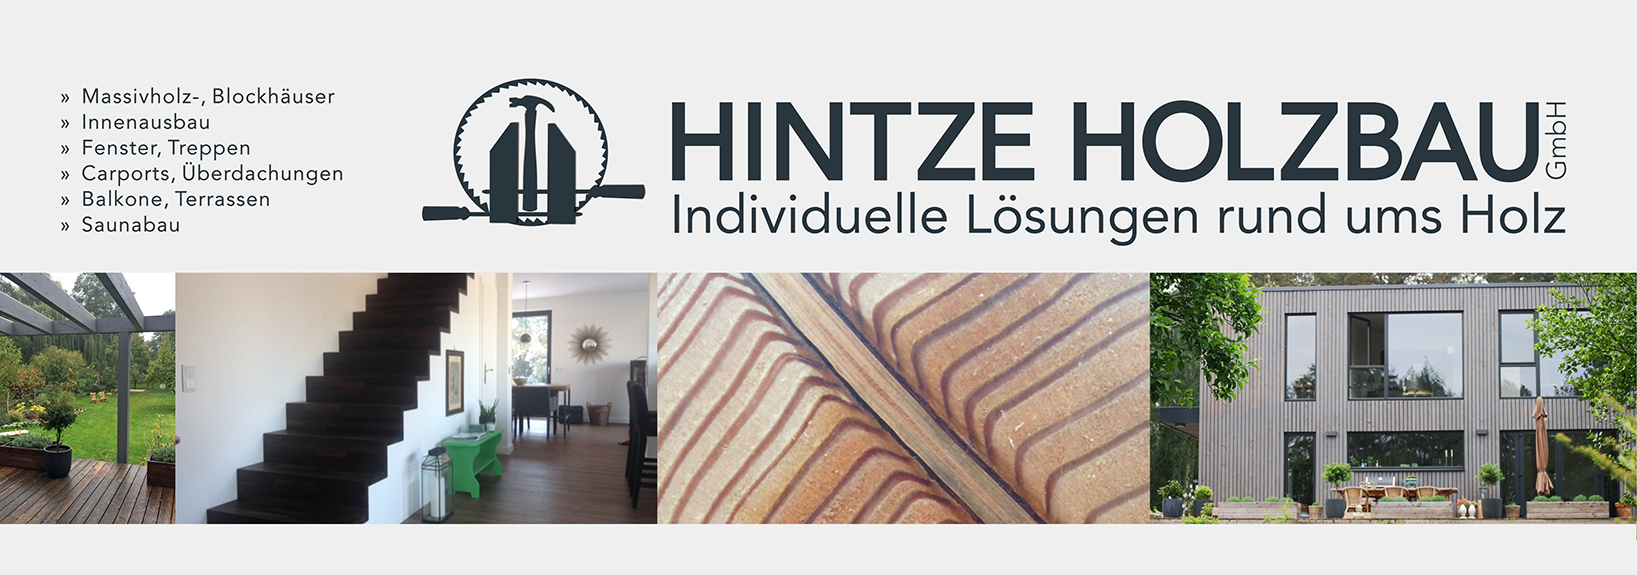 Hintze Holzbau in Brandenburg/Havel